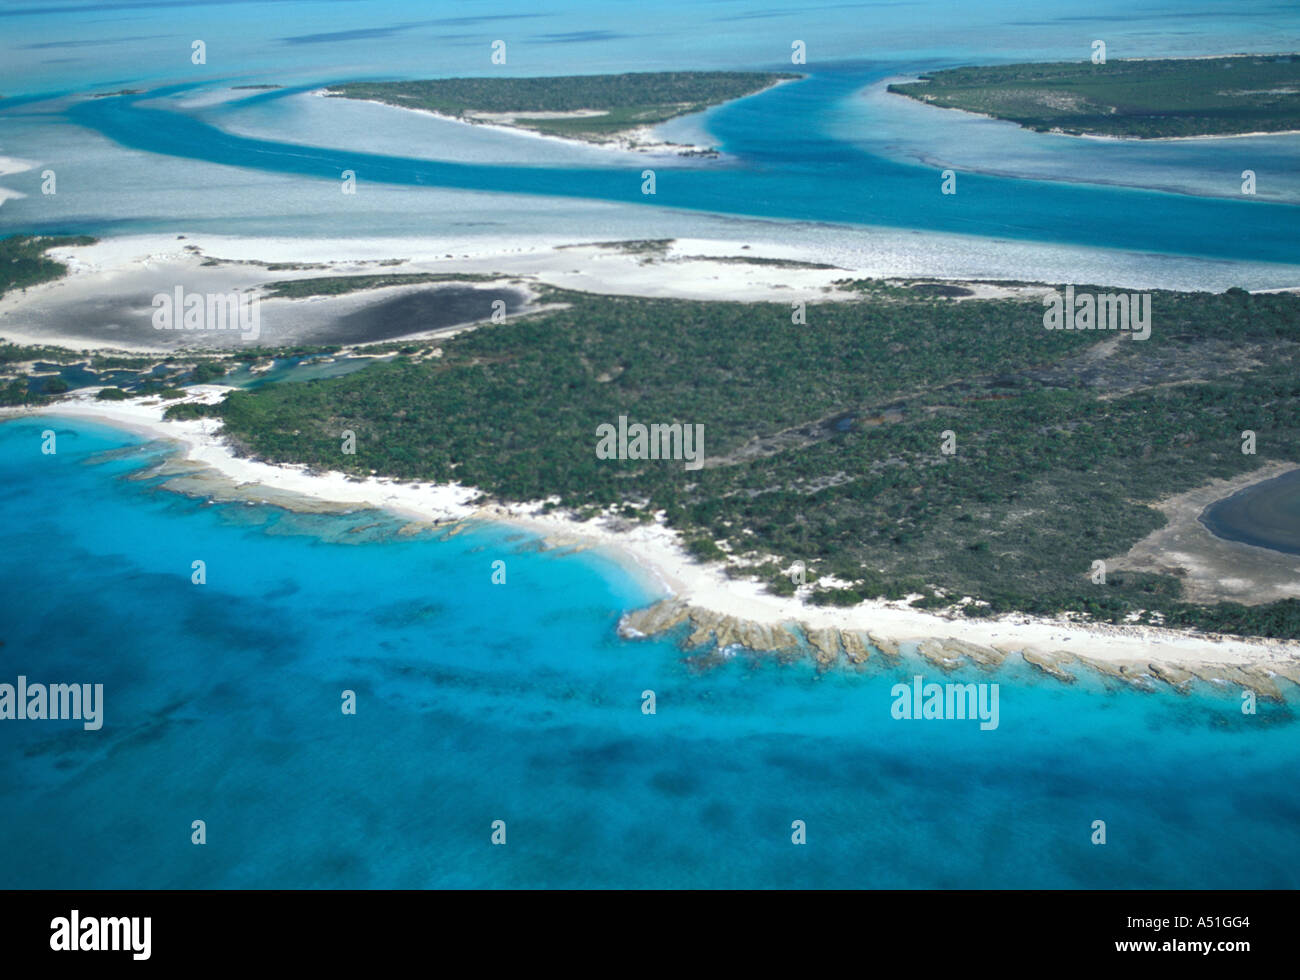 Foto aerea Isole Turks e Caicos tci caraibi orientali che mostra le spiagge sabbiose di colore verde acqua e isole non sviluppata Foto Stock